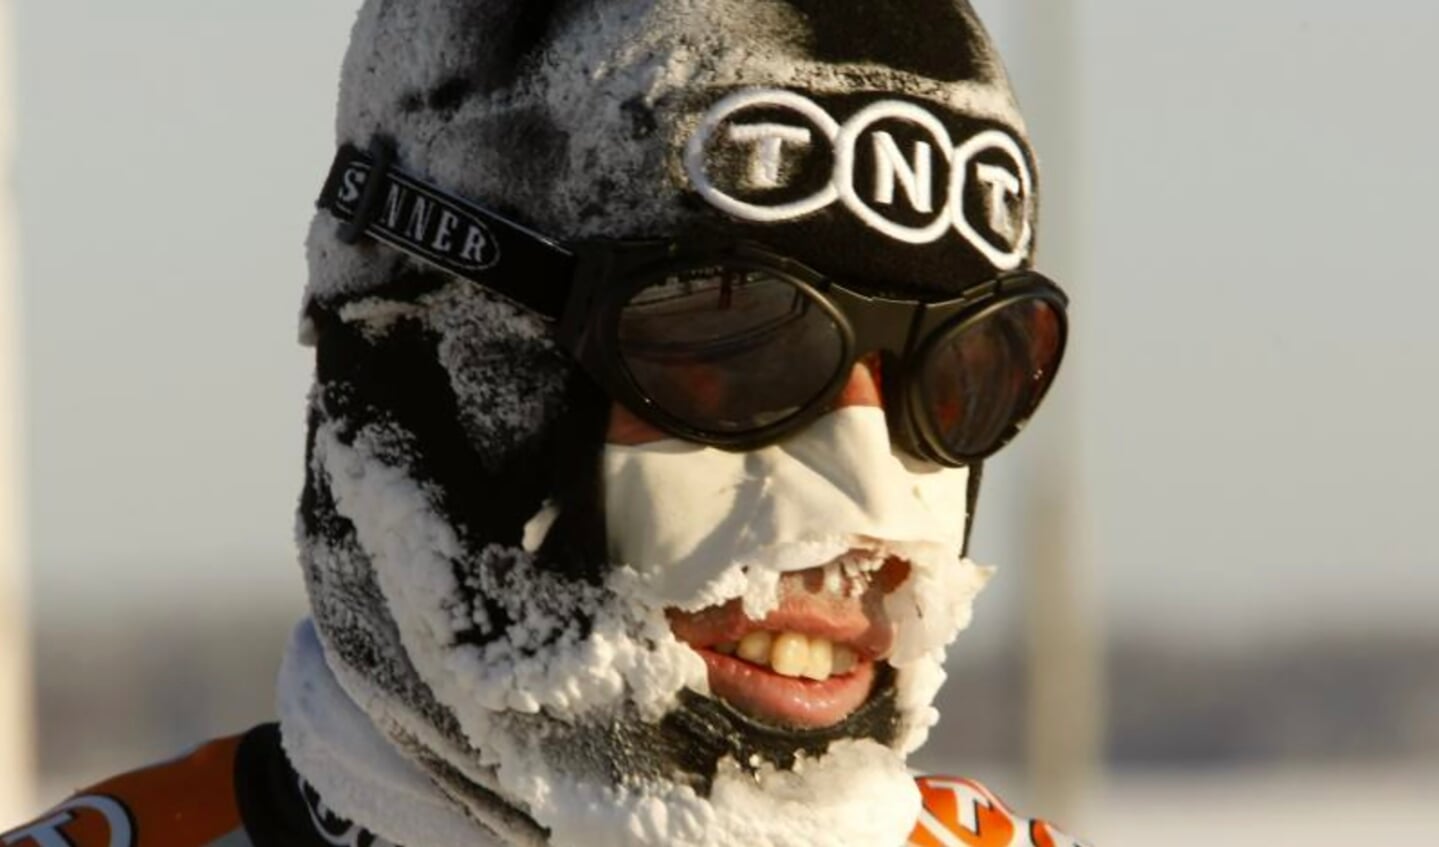 Kurt Wubben pal na zijn finish in Kuopio, het gezicht bedekt met ijs. ,,Koud? Nee, ik heb het eigenlijk helemaal niet koud gehad.’’ Hij was de enige. (Foto’s Timsimaging)